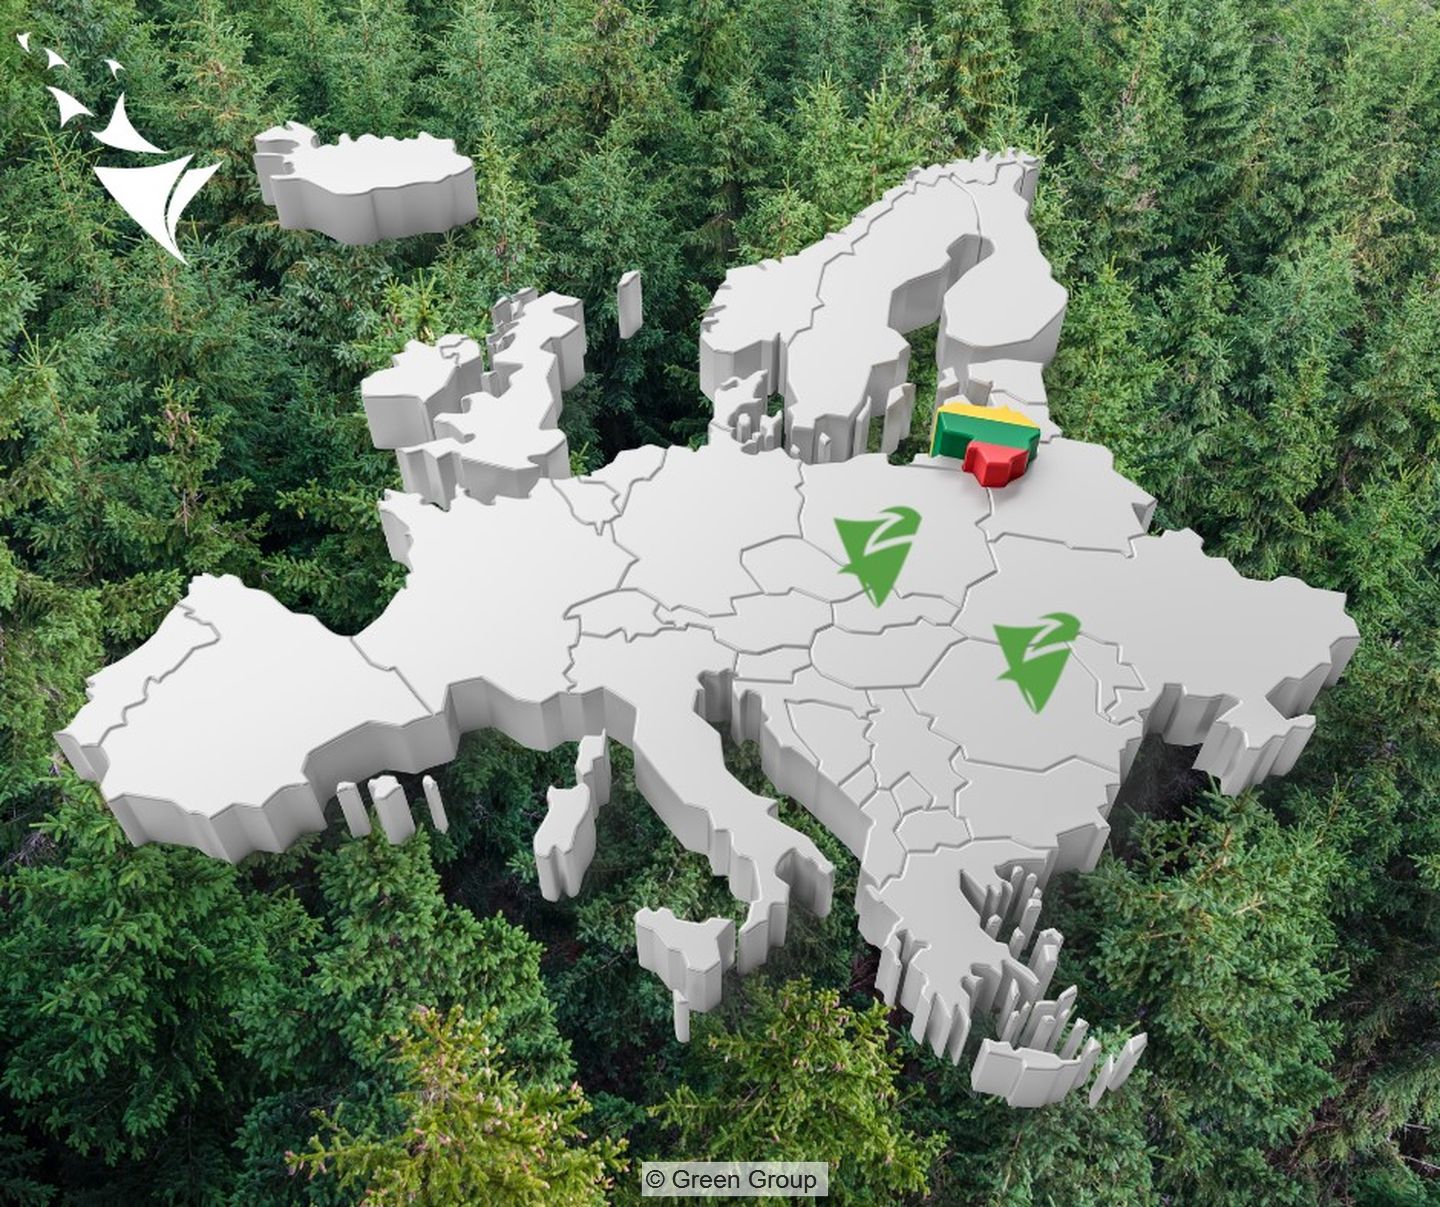 Europakarte mit Markierung für die geographische Präsenz von Green Group in Rumänien (Unternehmenssitz), Slowakei und Litauen